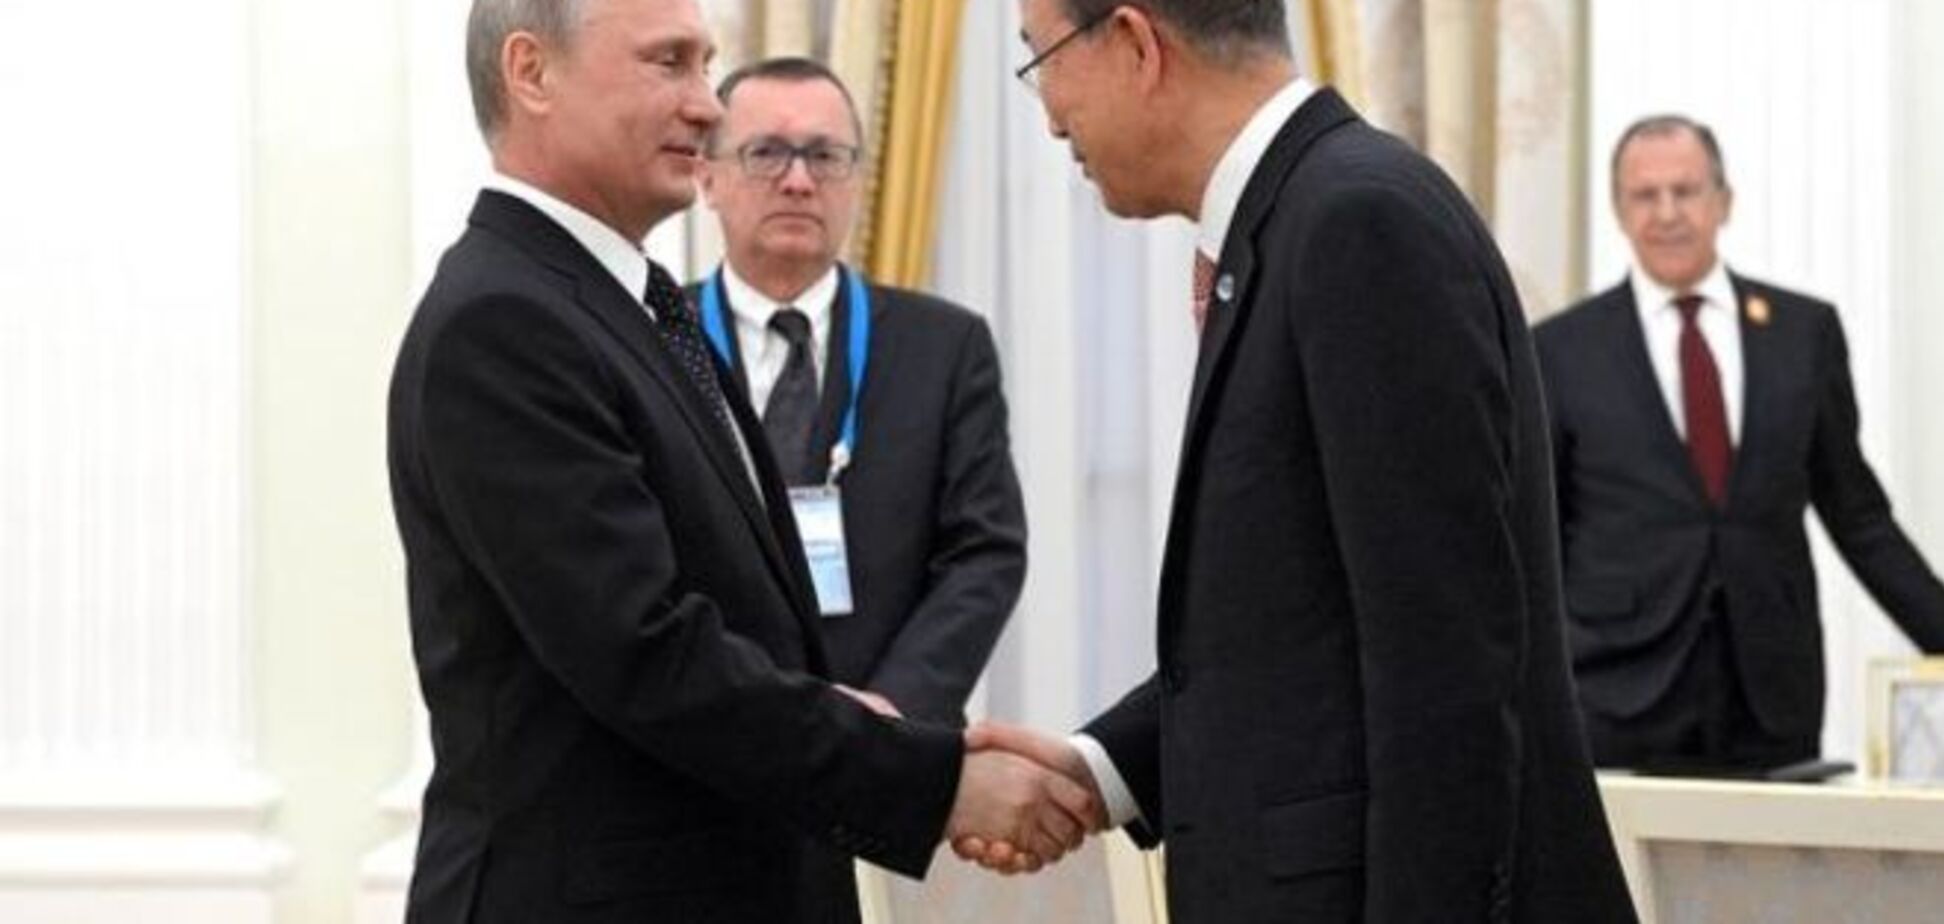 Подлиза: Пан Ги Мун расхваливал в Москве 'Путина-миротворца' и 'любвеобильных' россиян